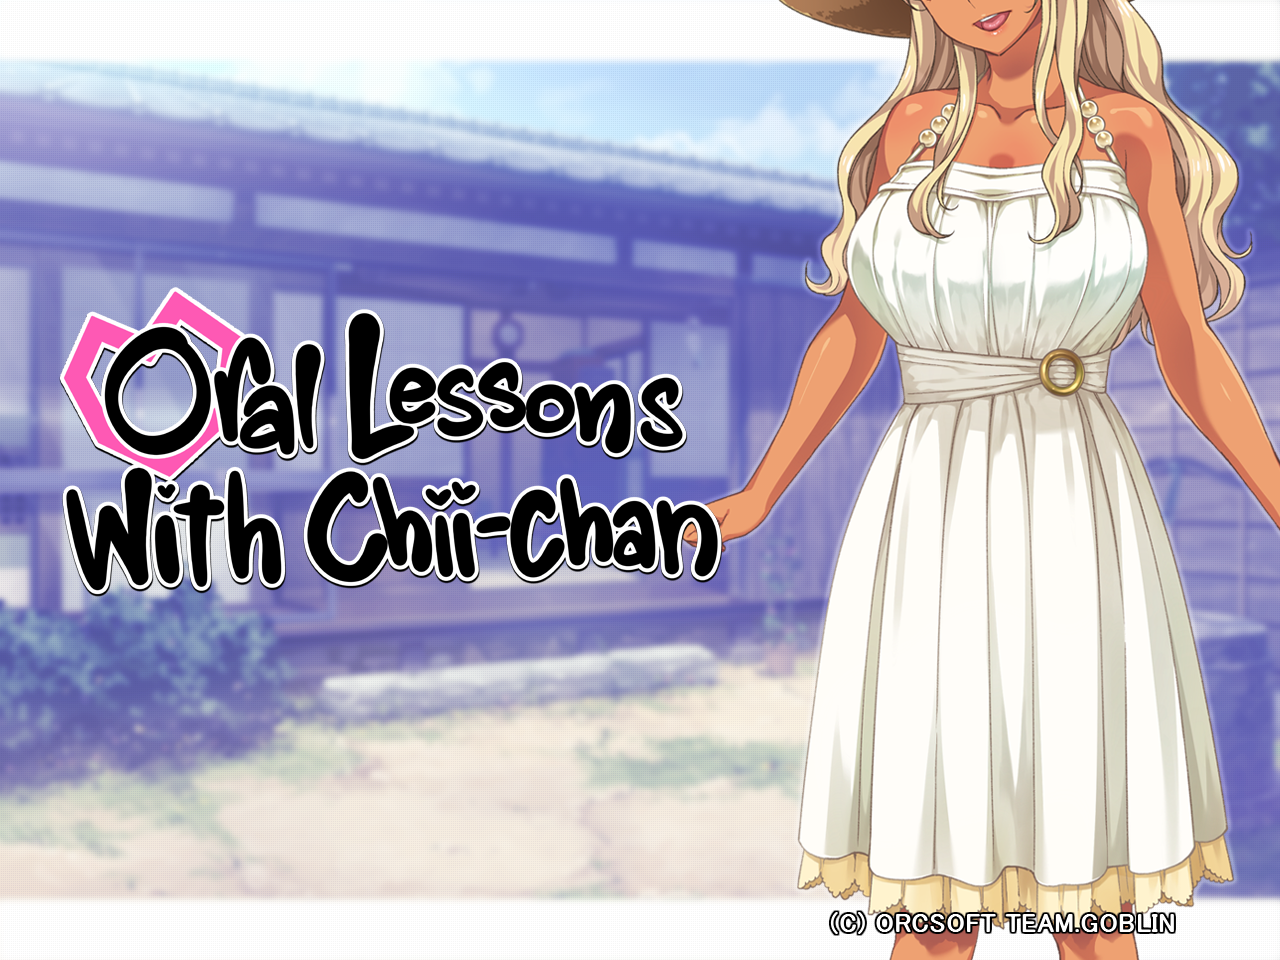 Oral Lessons with Chii-chan | Aprenda e se apaixone